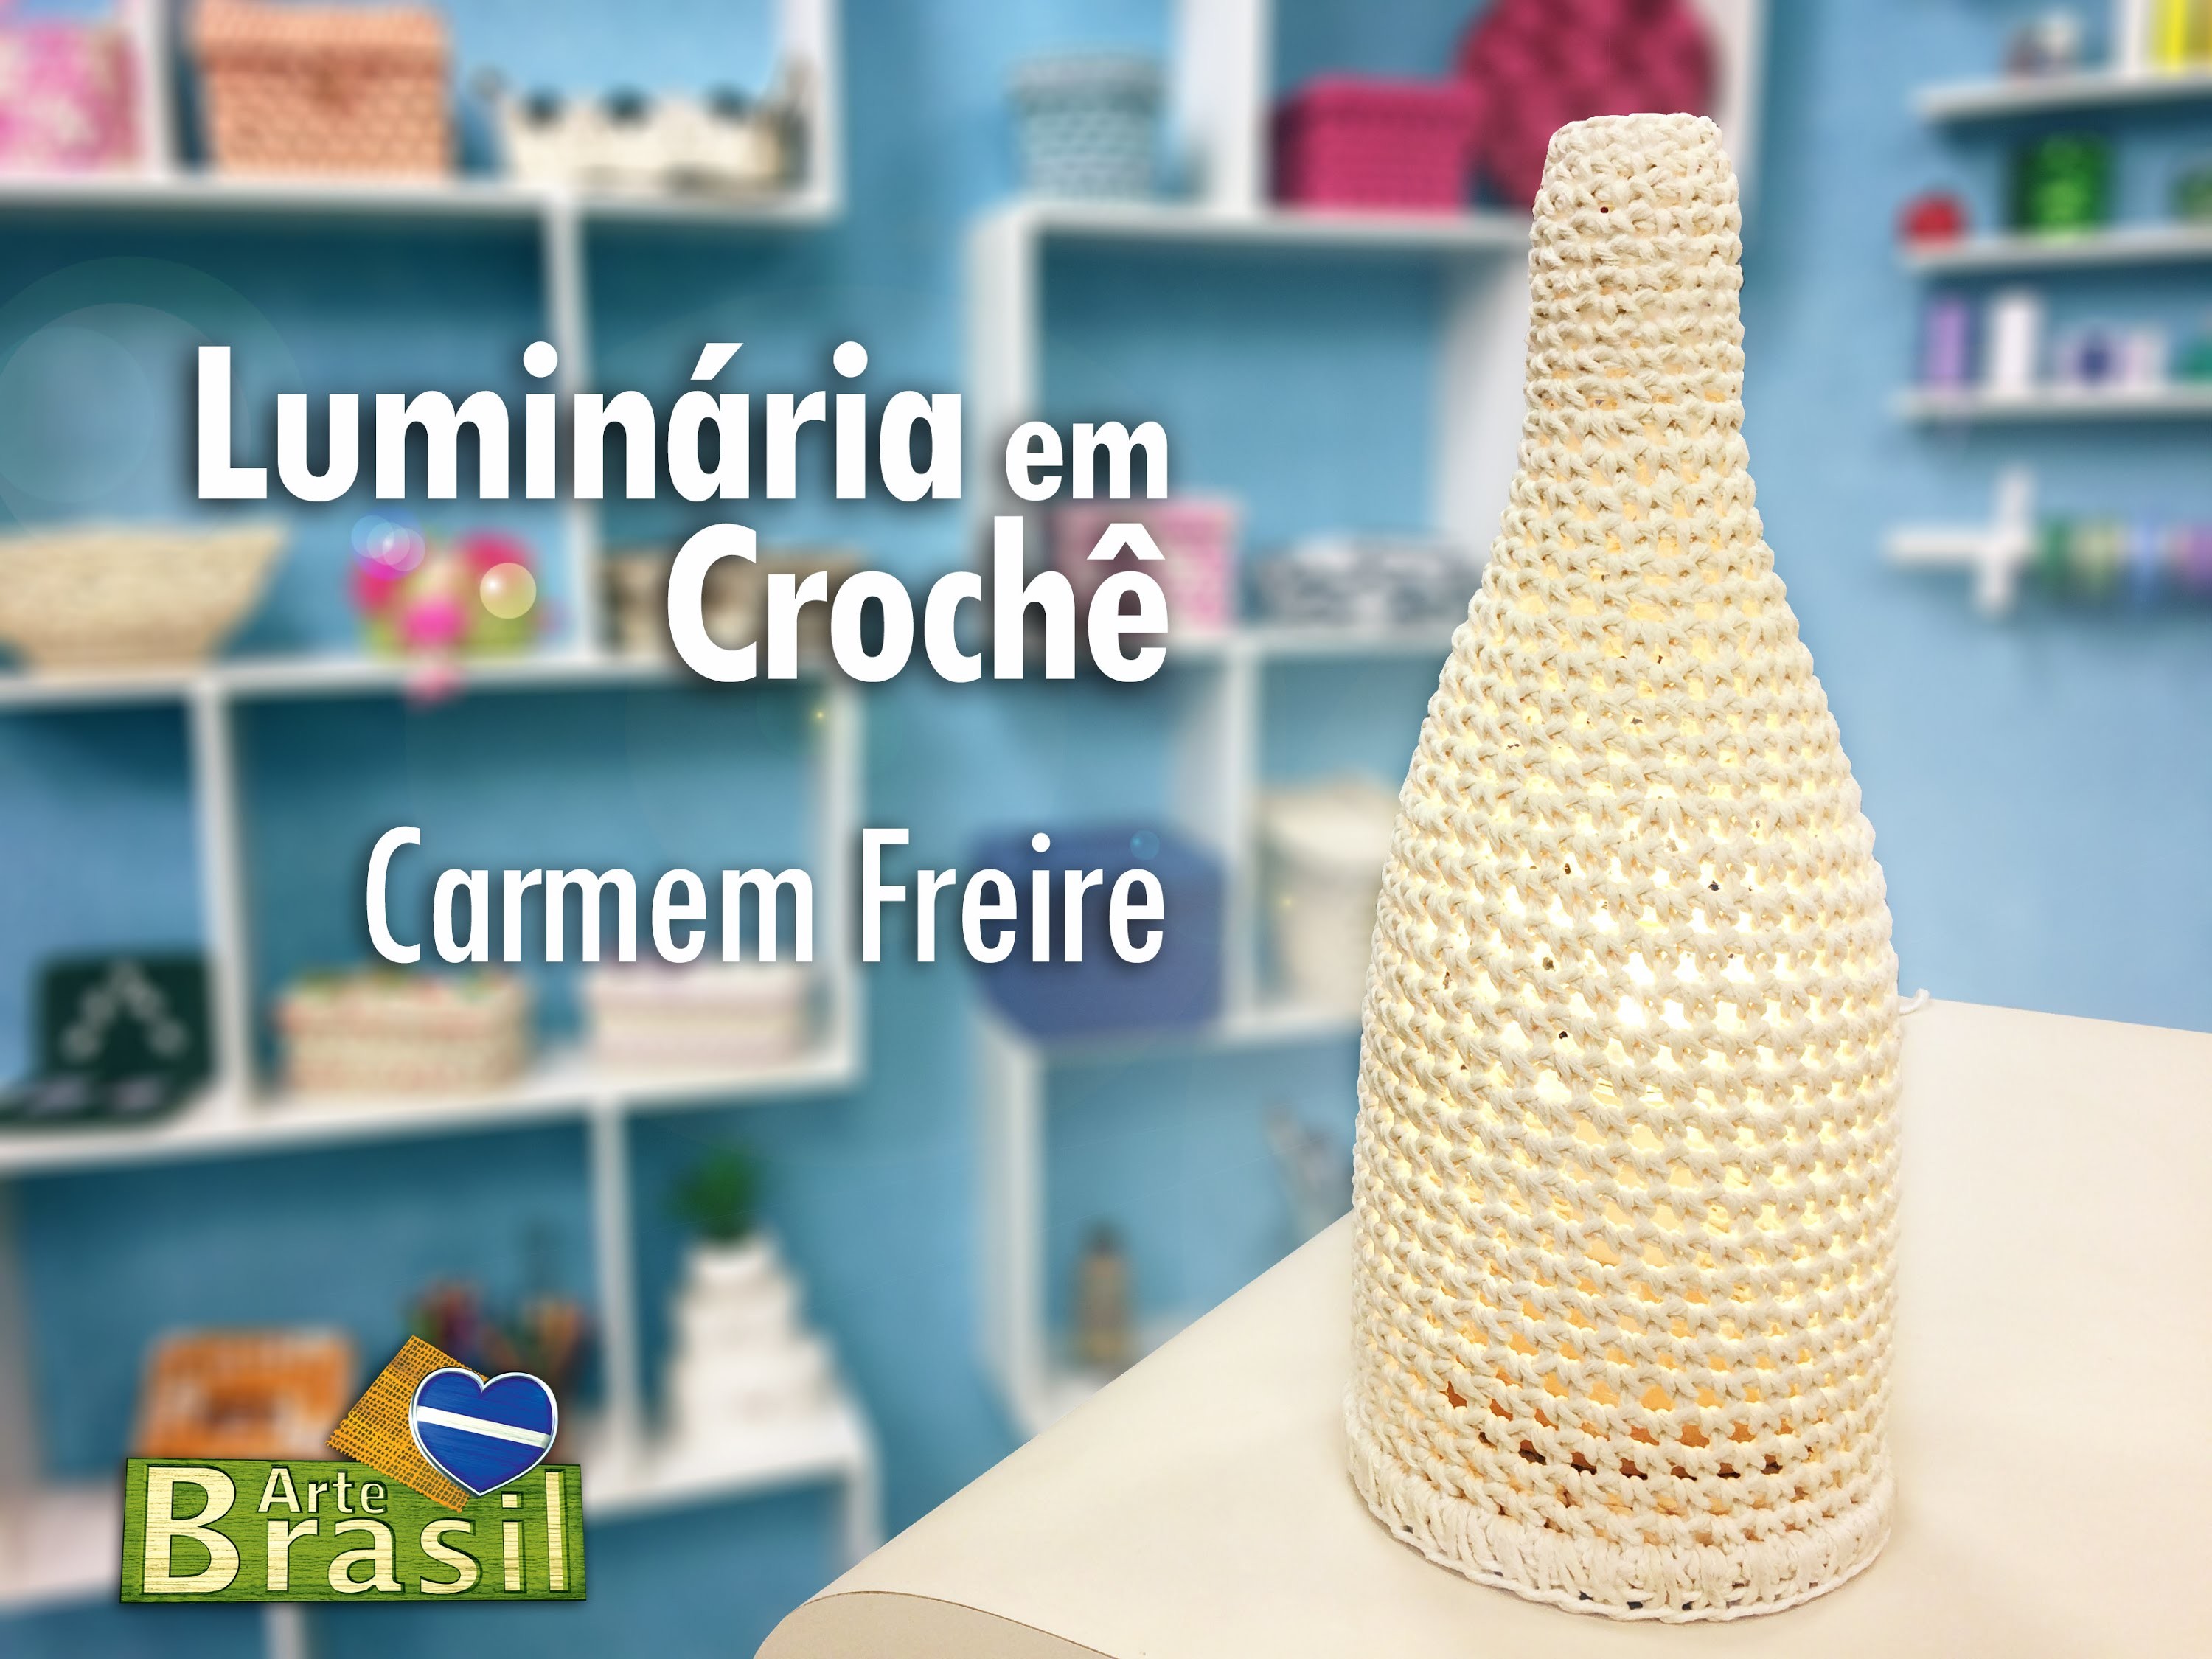 Programa Arte Brasil - 26.01.2015 - Carmem Freire - Luminária em Crochê